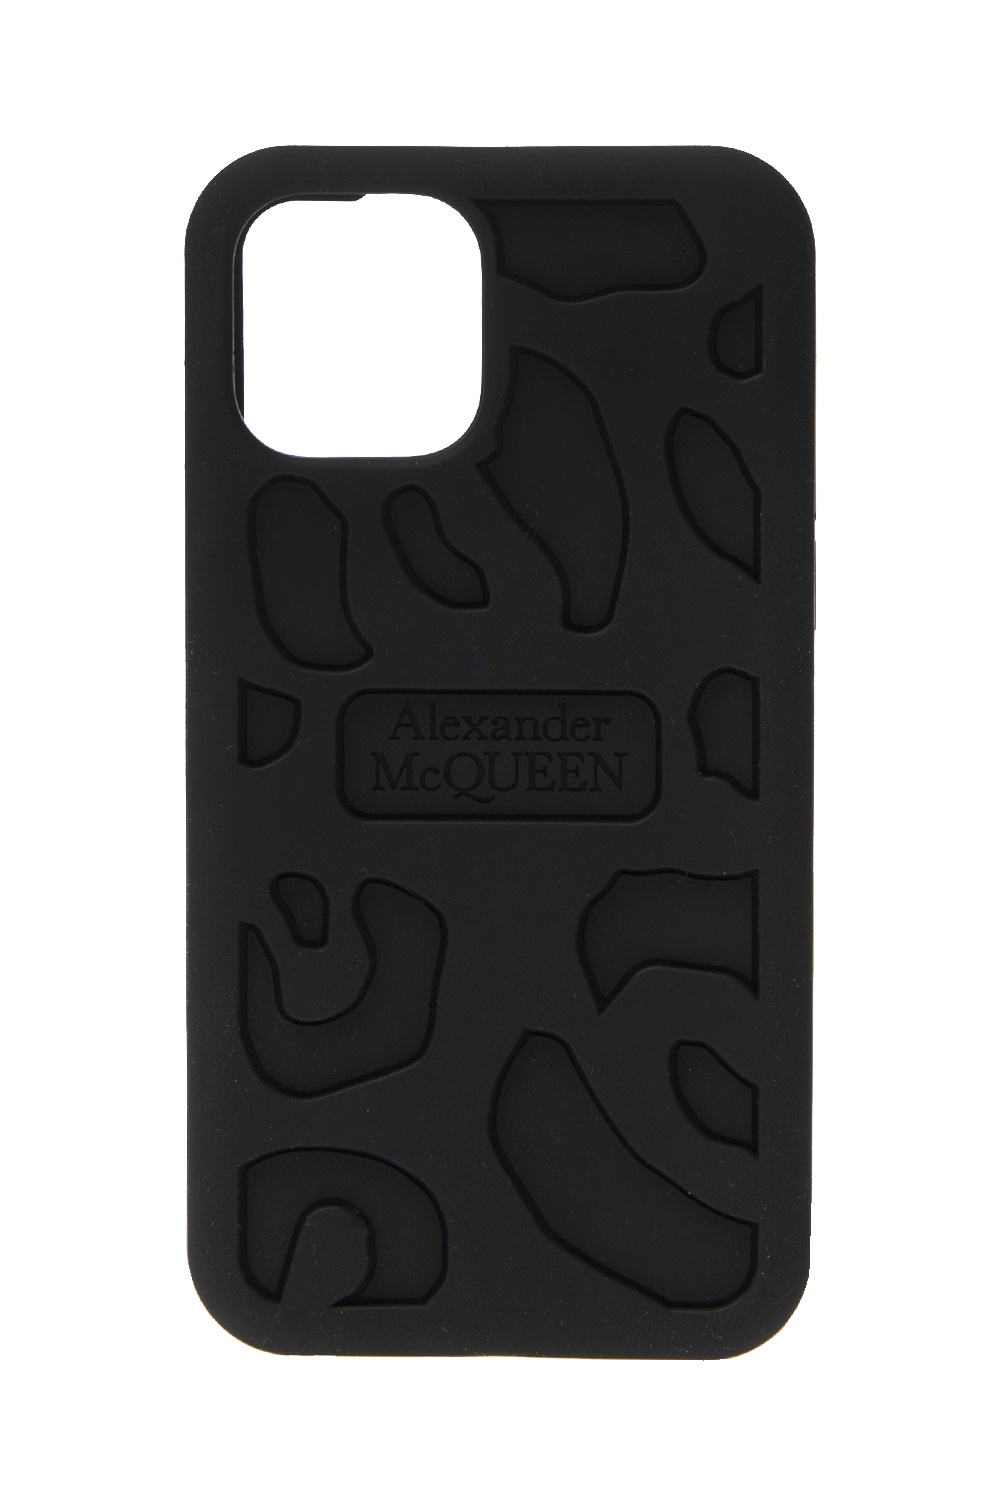 Alexander McQueen iPhone 11 Pro case | Men's Accessories | Vitkac